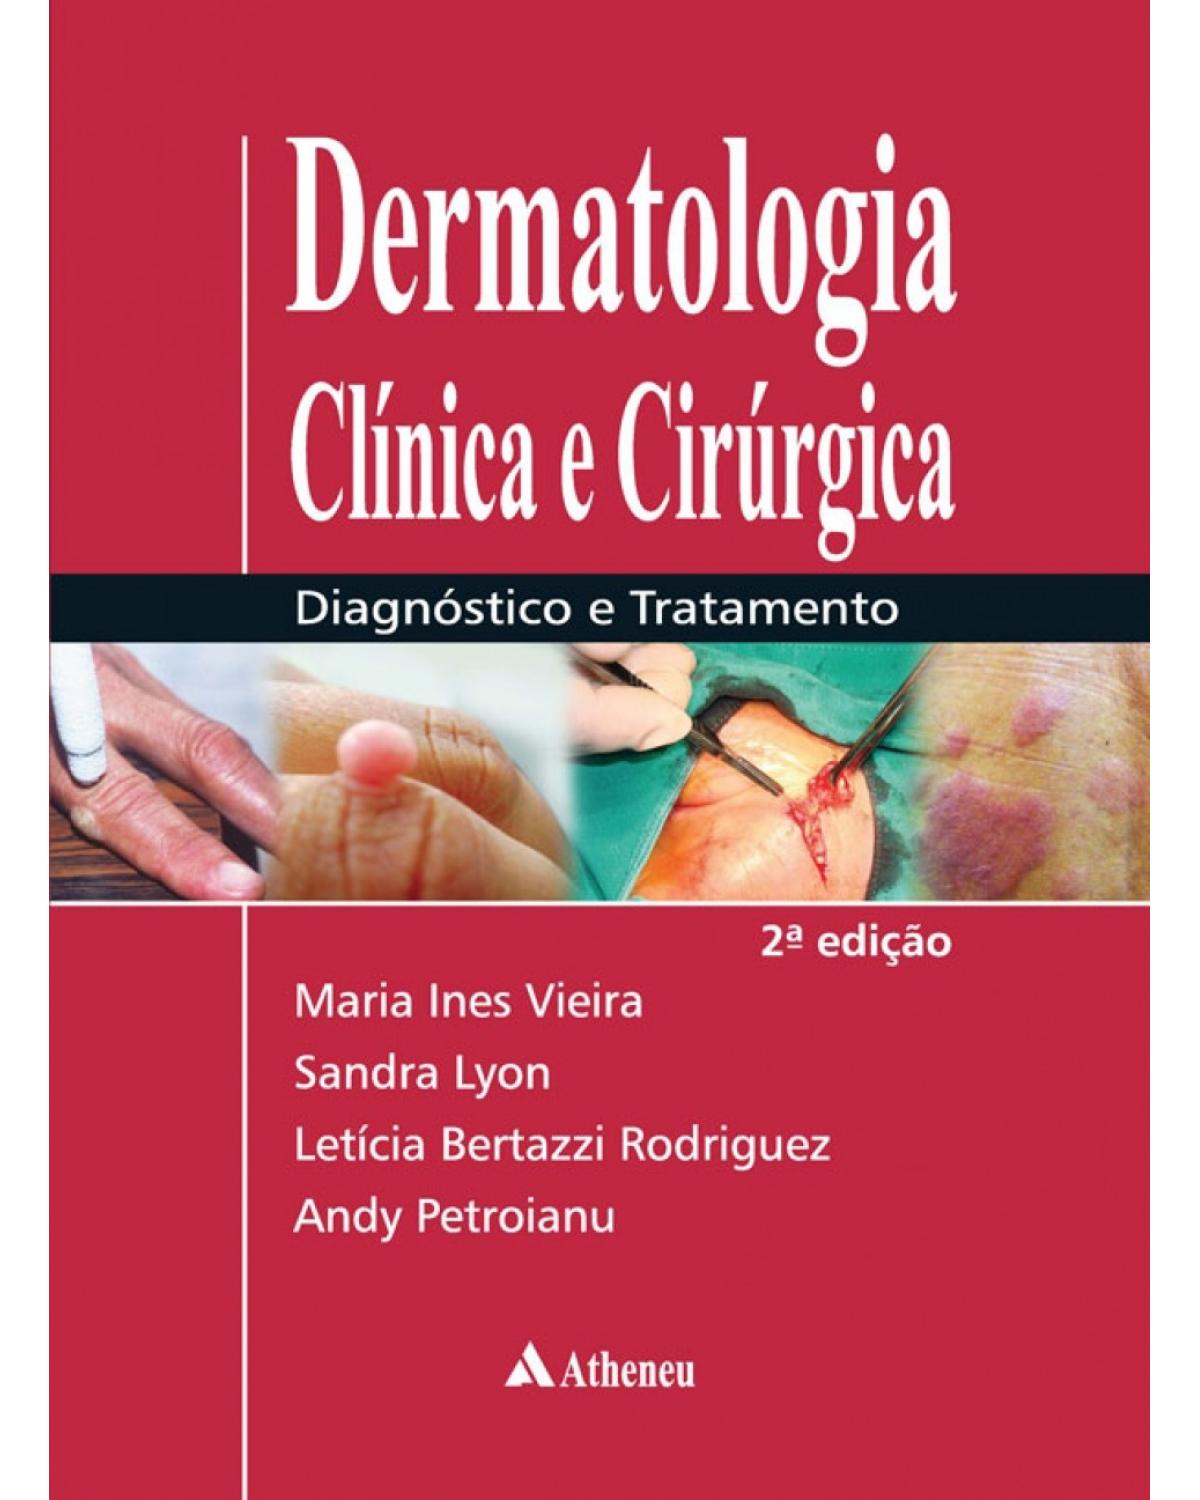 Dermatologia clínica e cirúrgica - Diagnóstico e tratamento - 2ª Edição | 2016